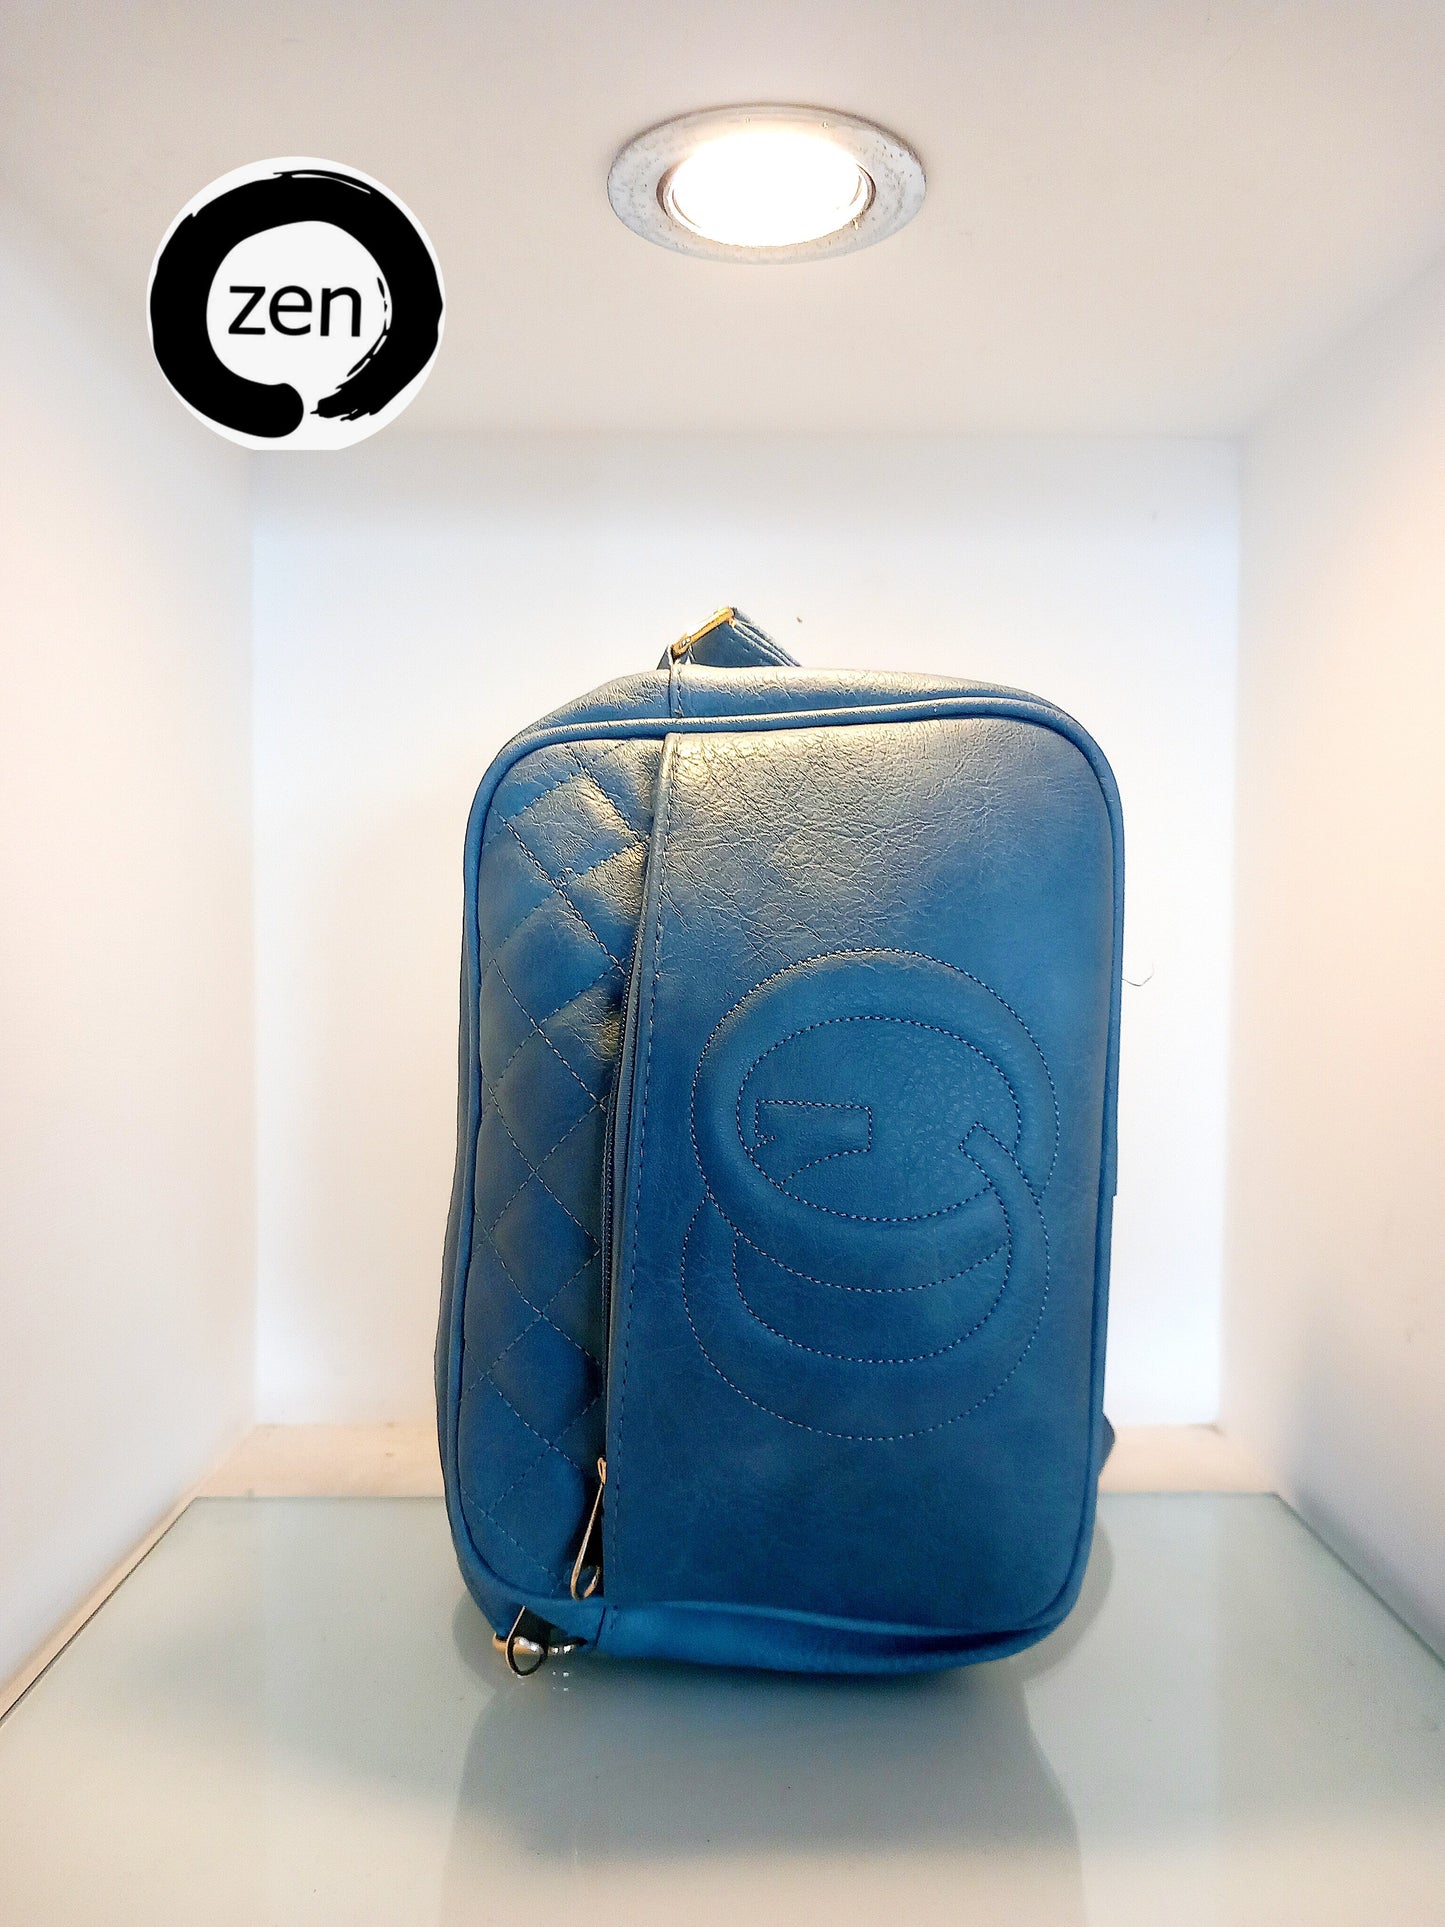 Zen bag